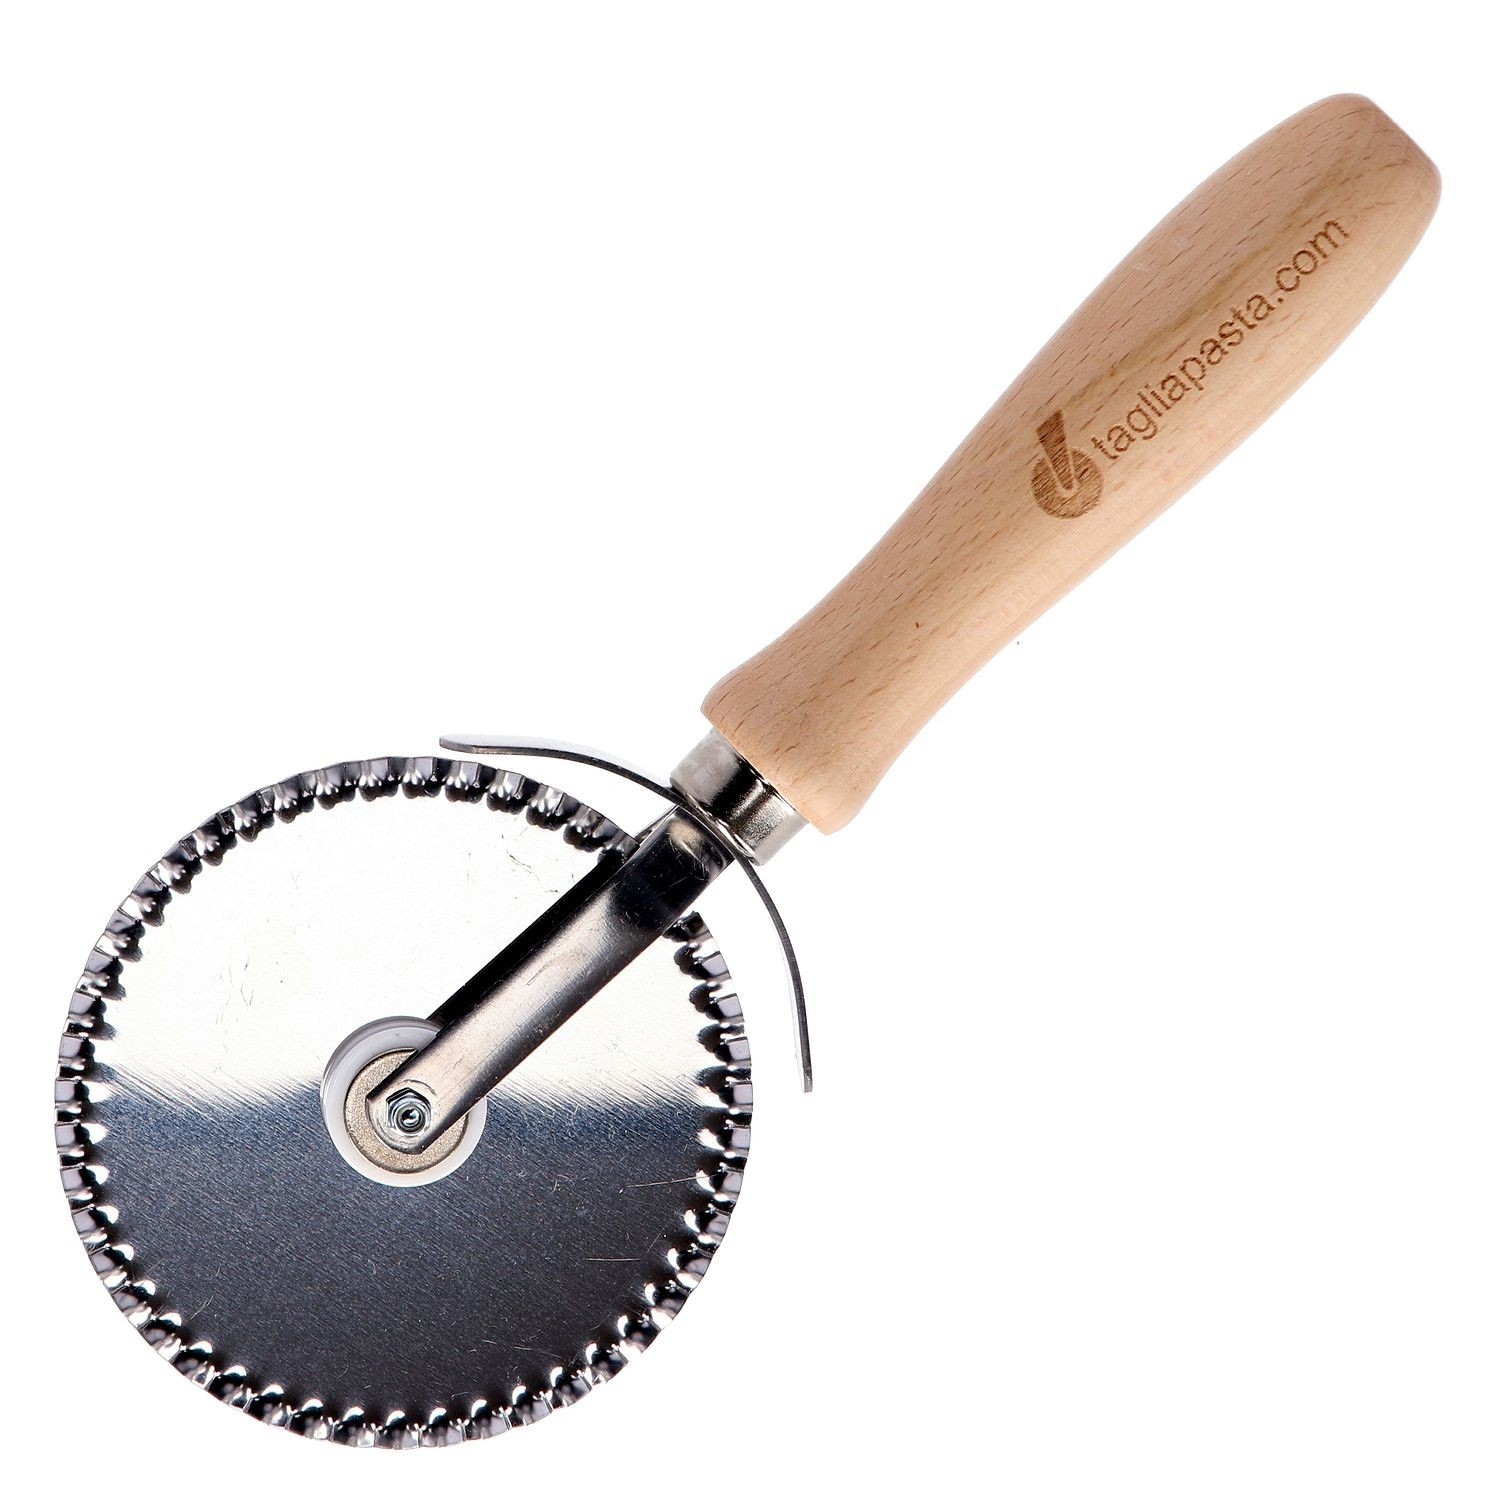 utensili da cucina colore: grigio rosso & comoda impugnatura sul palmo-Rotella per Pizza Dario-Rotella tagliapizza strumenti Wheel Cutter 